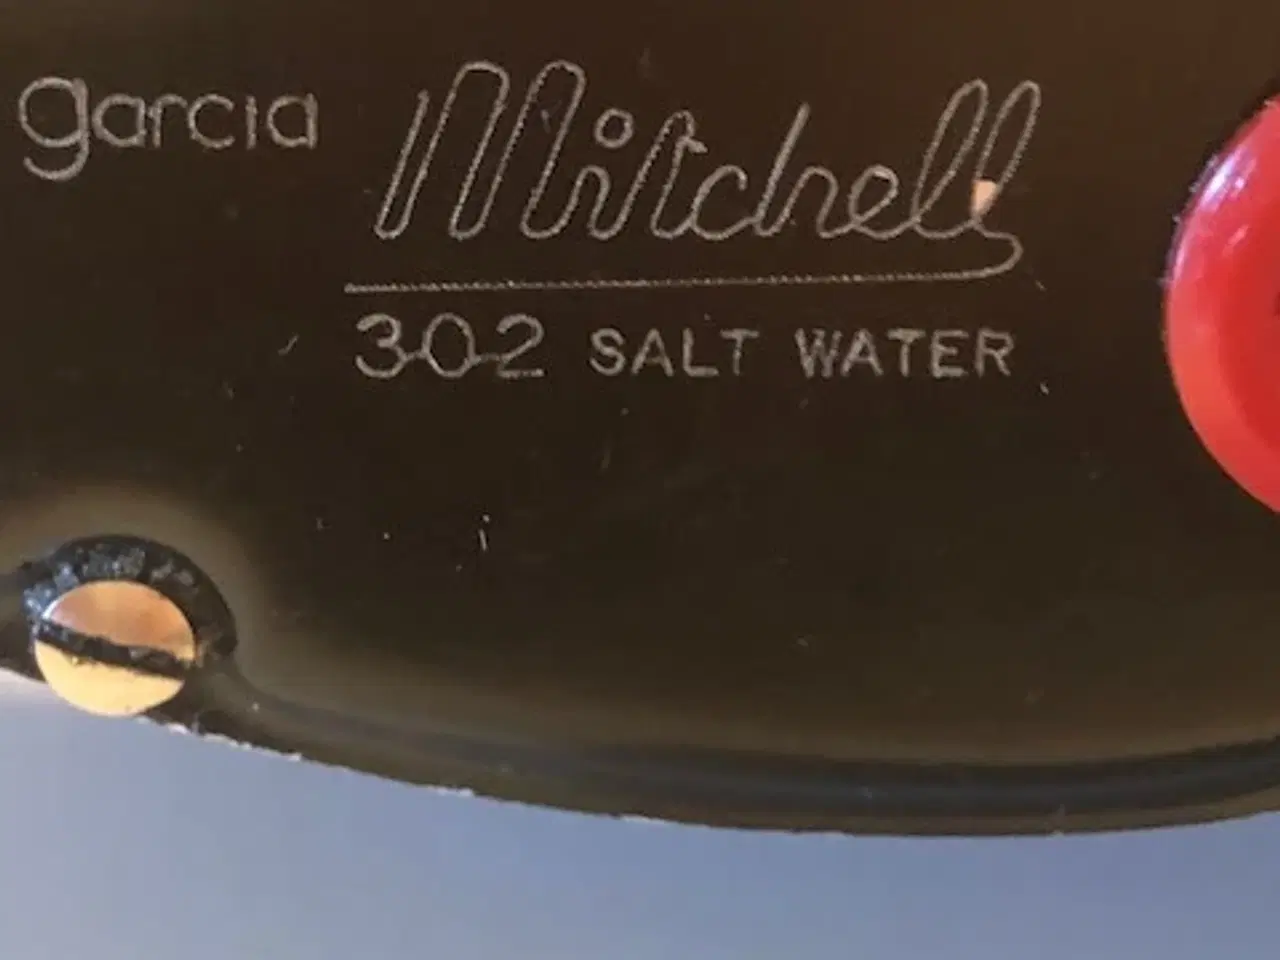 Billede 5 - Fiske hjul Garcia Mitchell 302 Slat Water. 